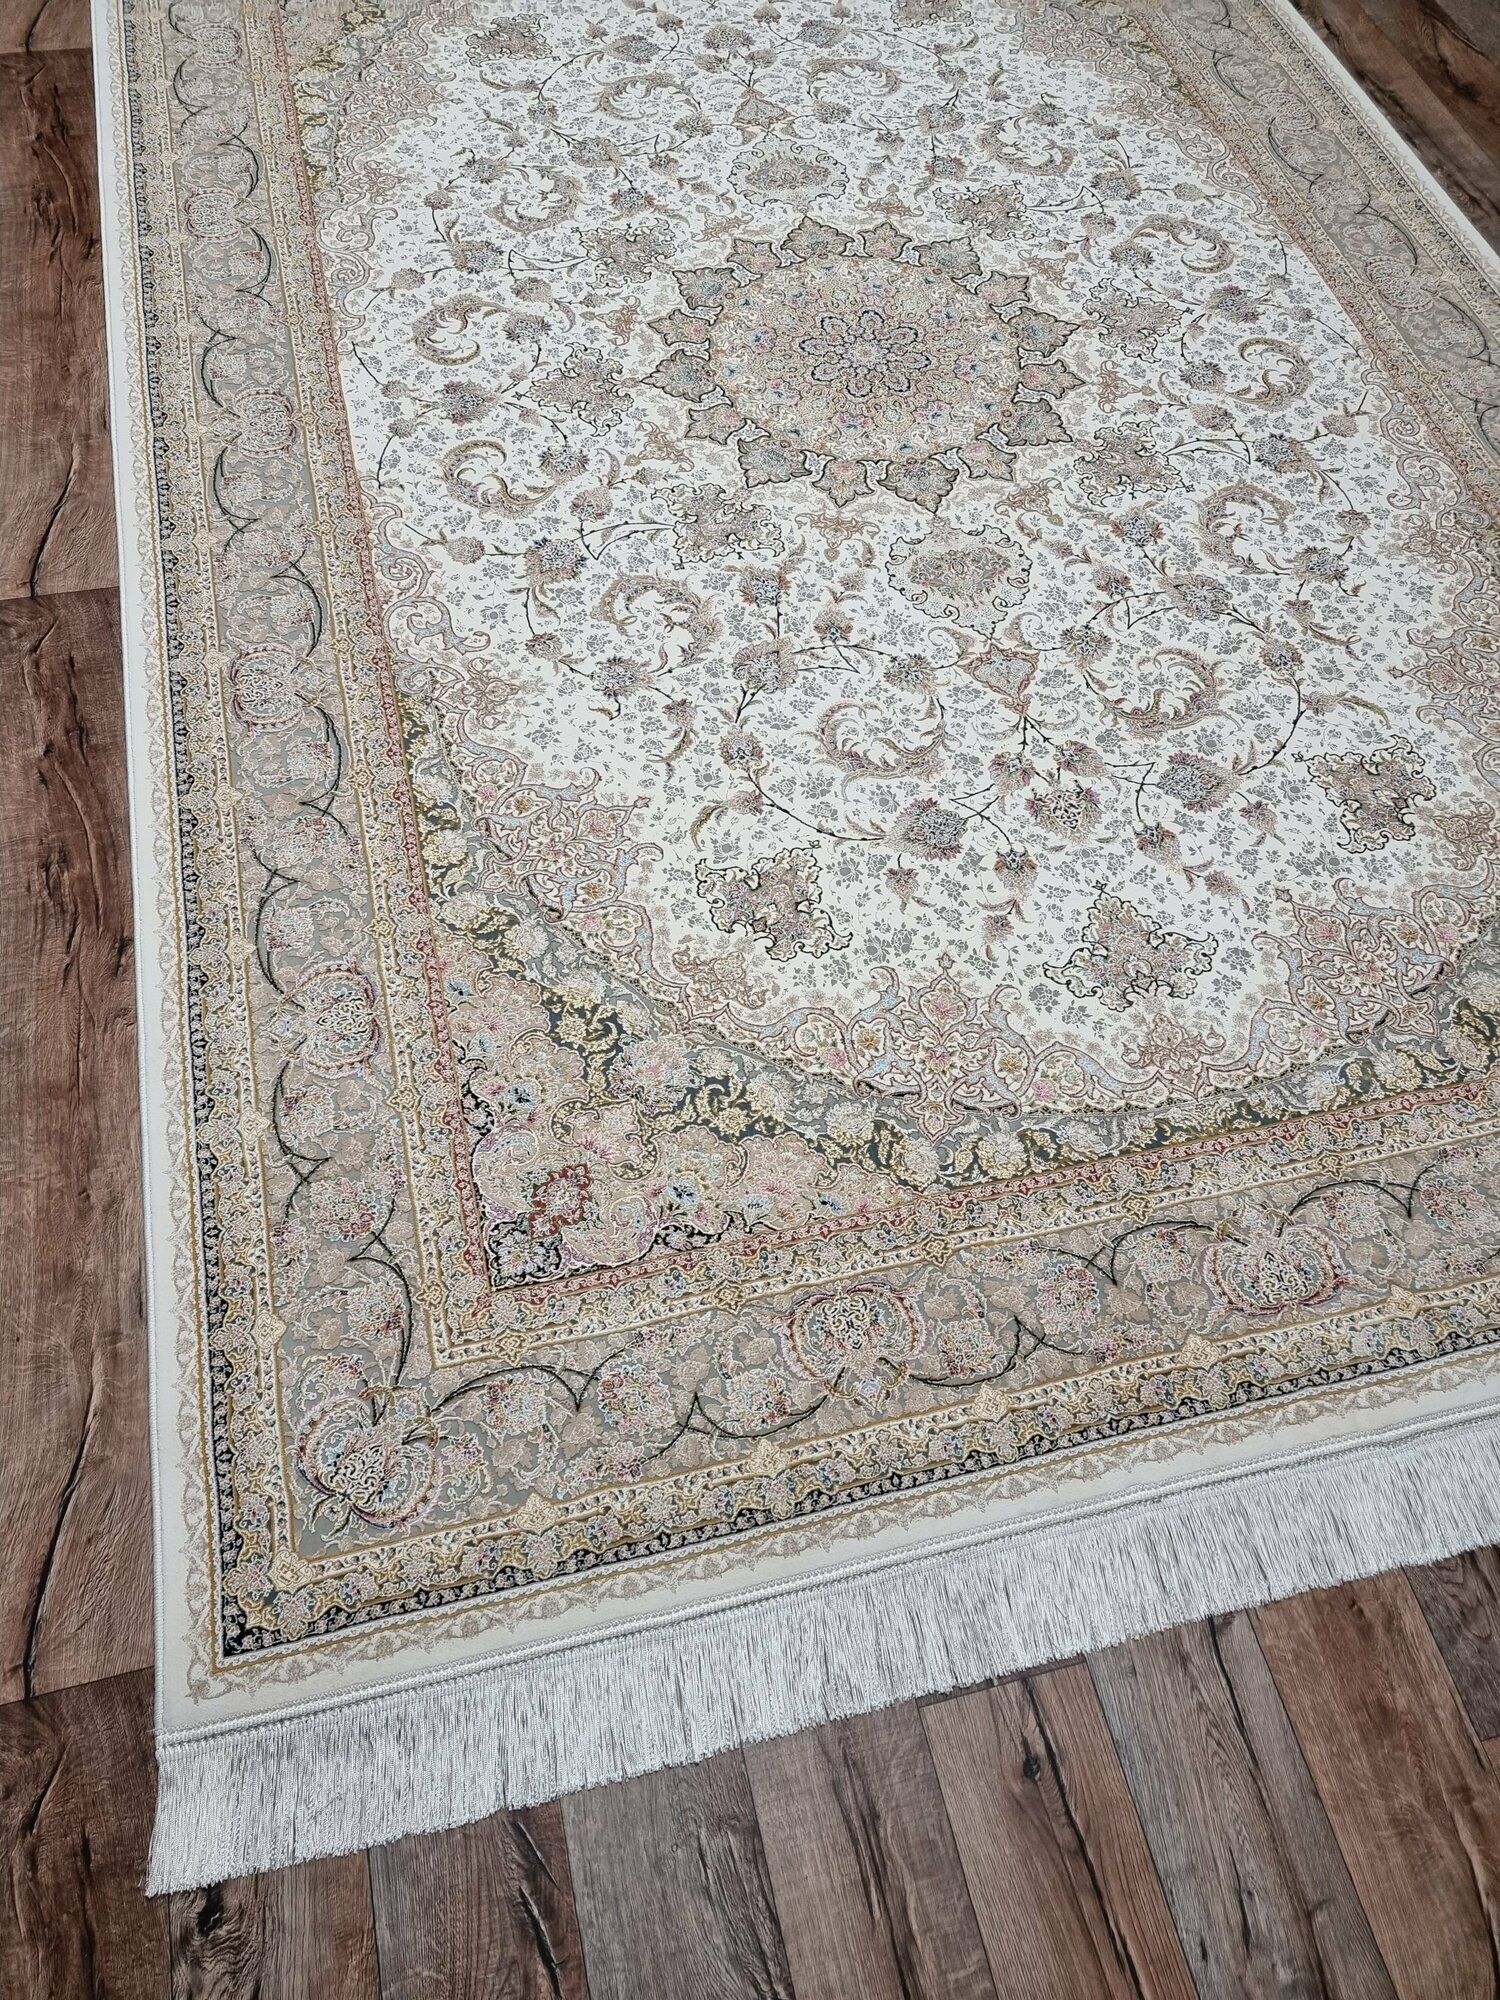 Персидский ковер Farrahi Carpet, Иран, размер 1.5х2.25 м - фотография № 1